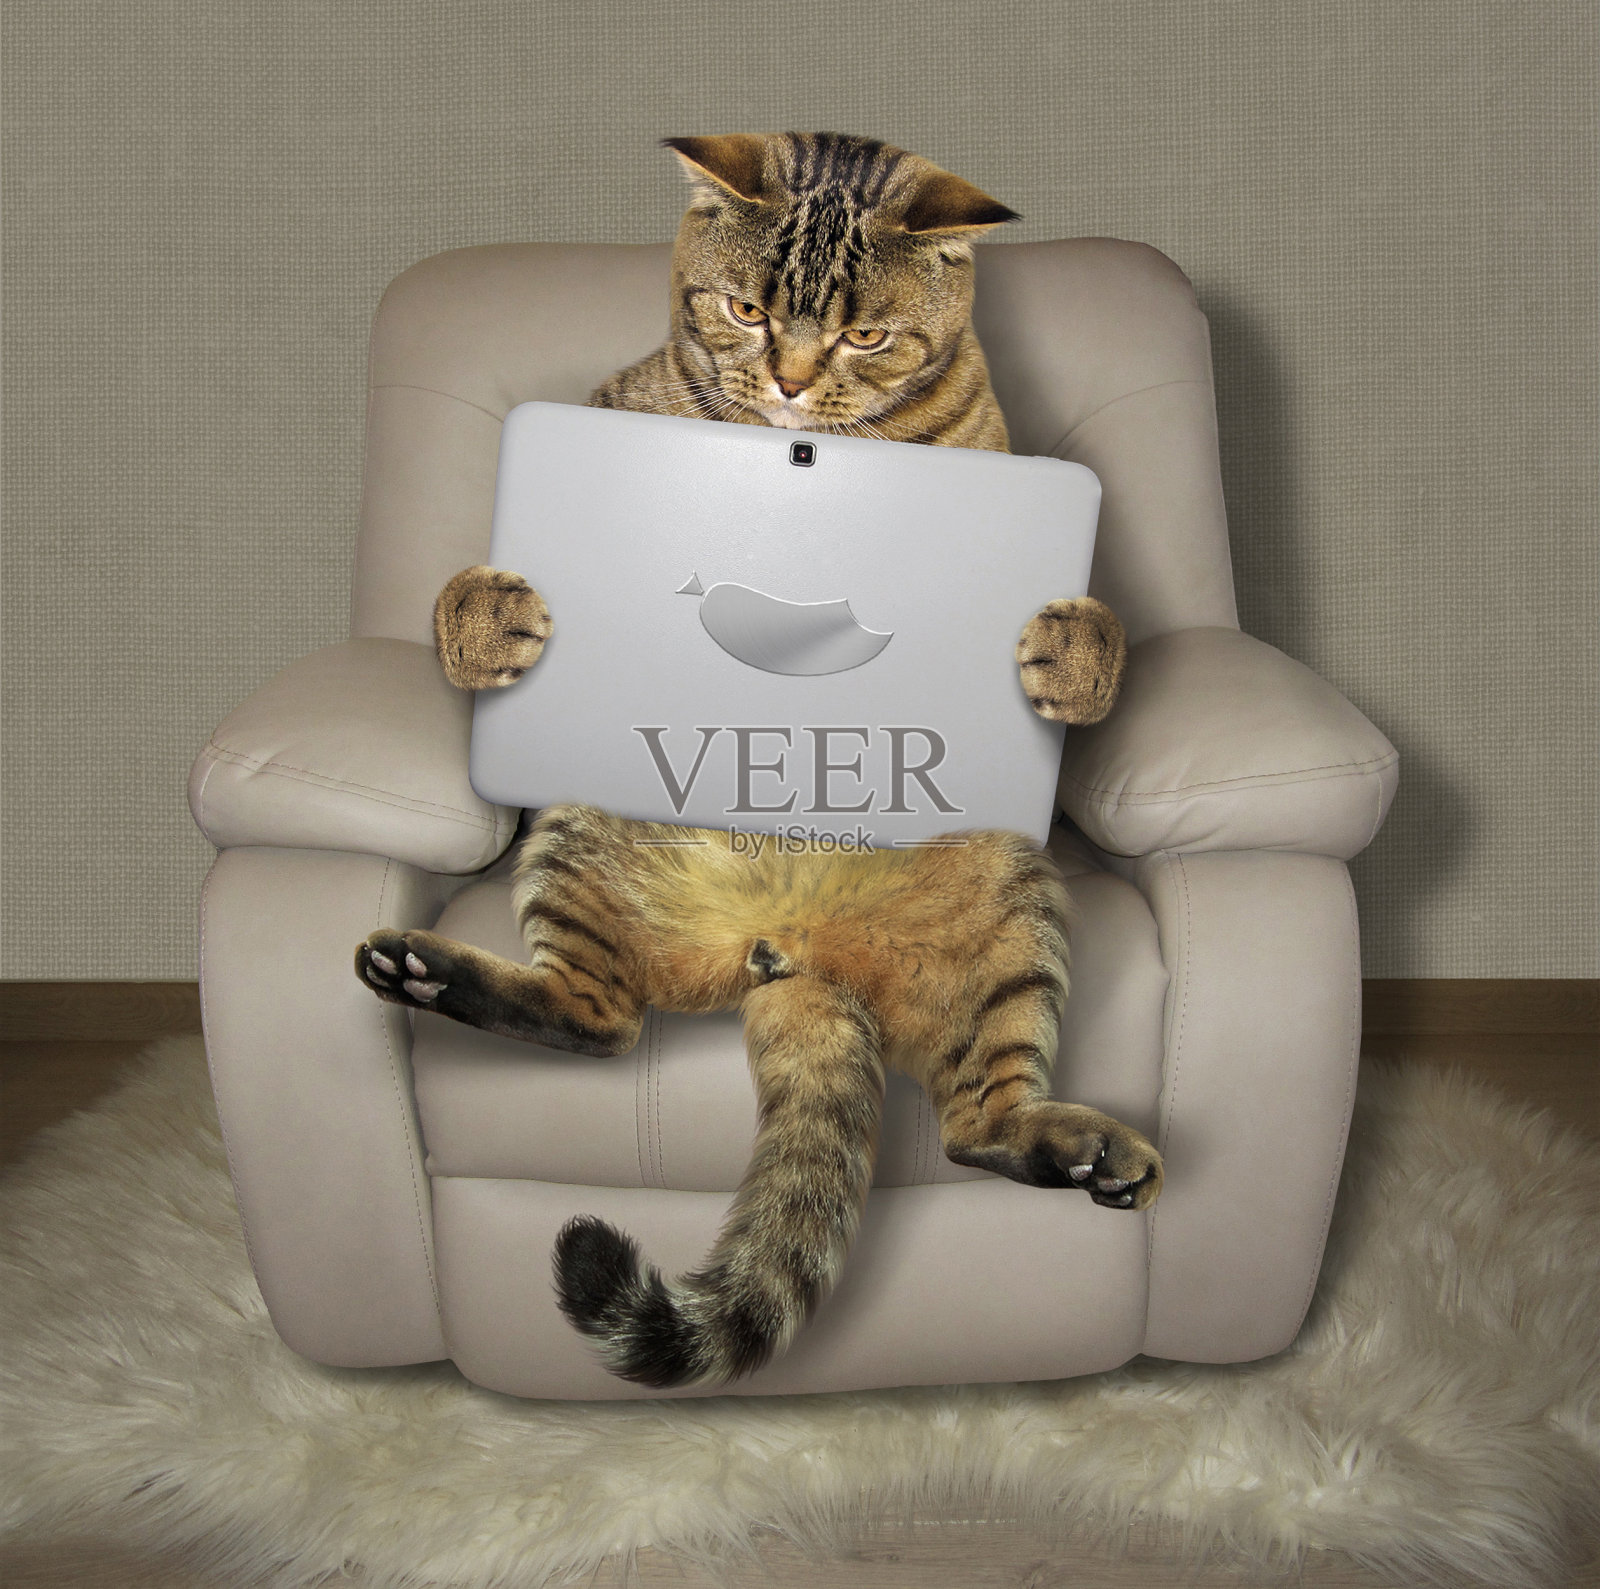 扶手椅上有一只小玩意儿的猫照片摄影图片